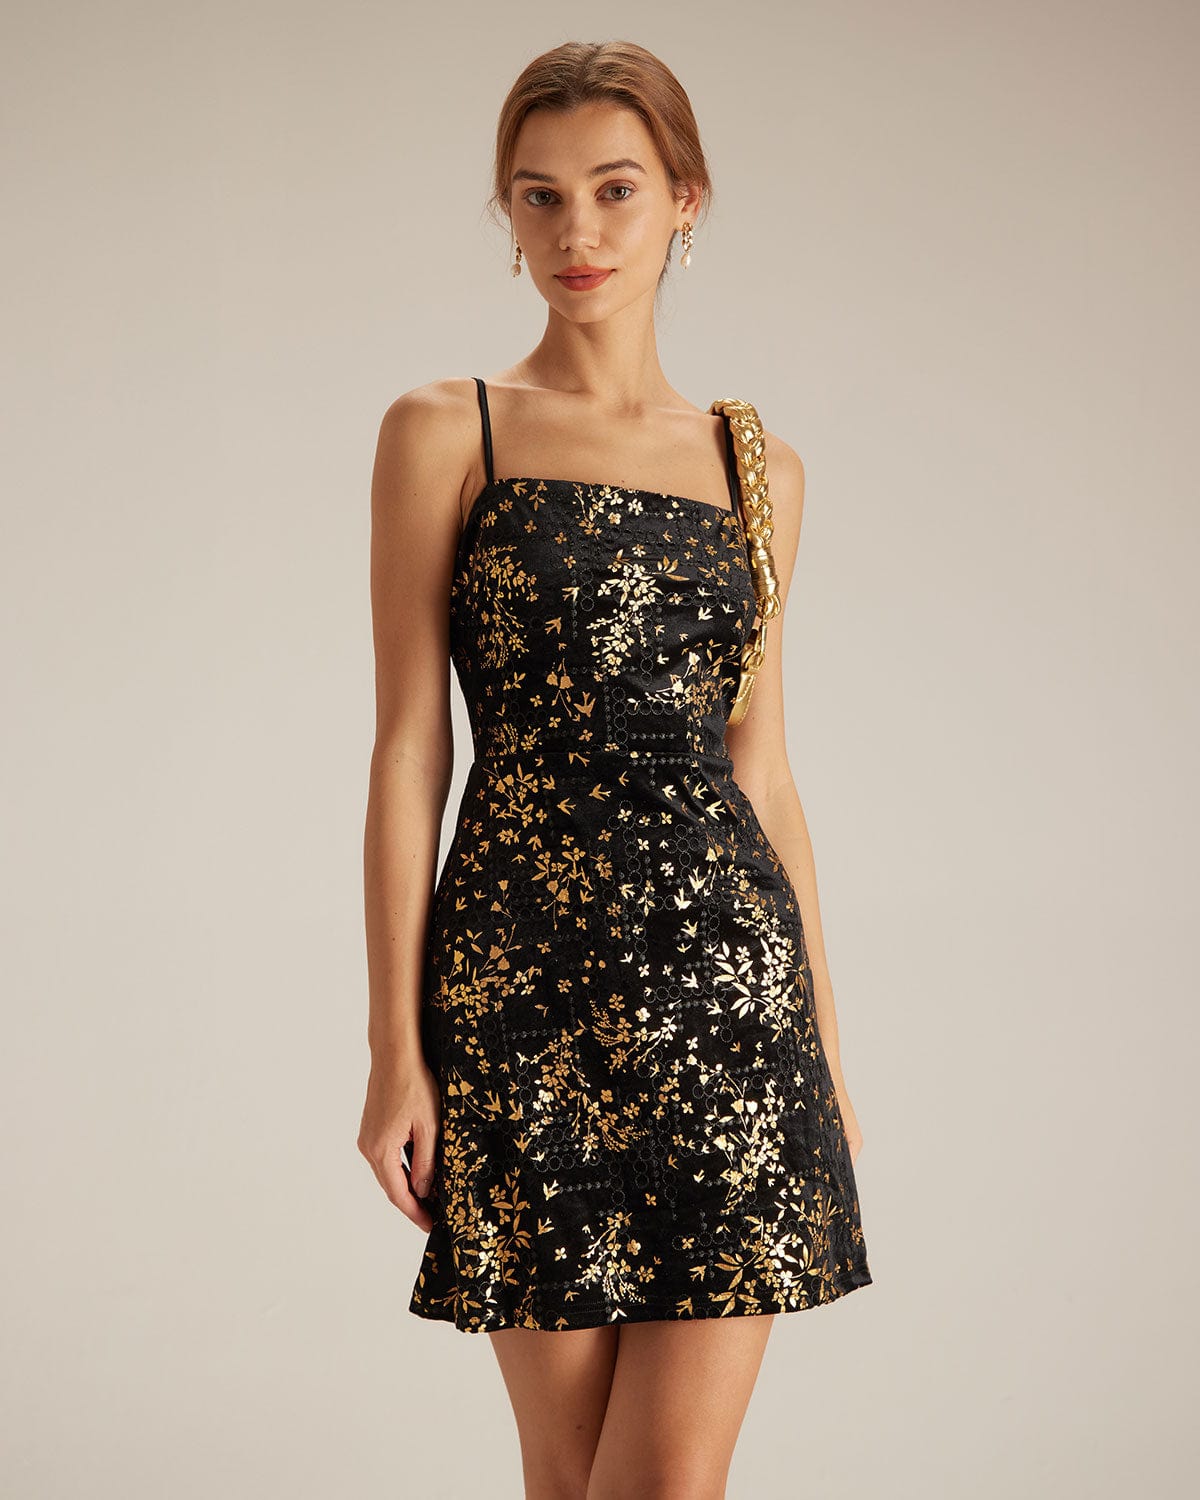 The Gold Floral Velvet Dress Black Dresses - RIHOAS